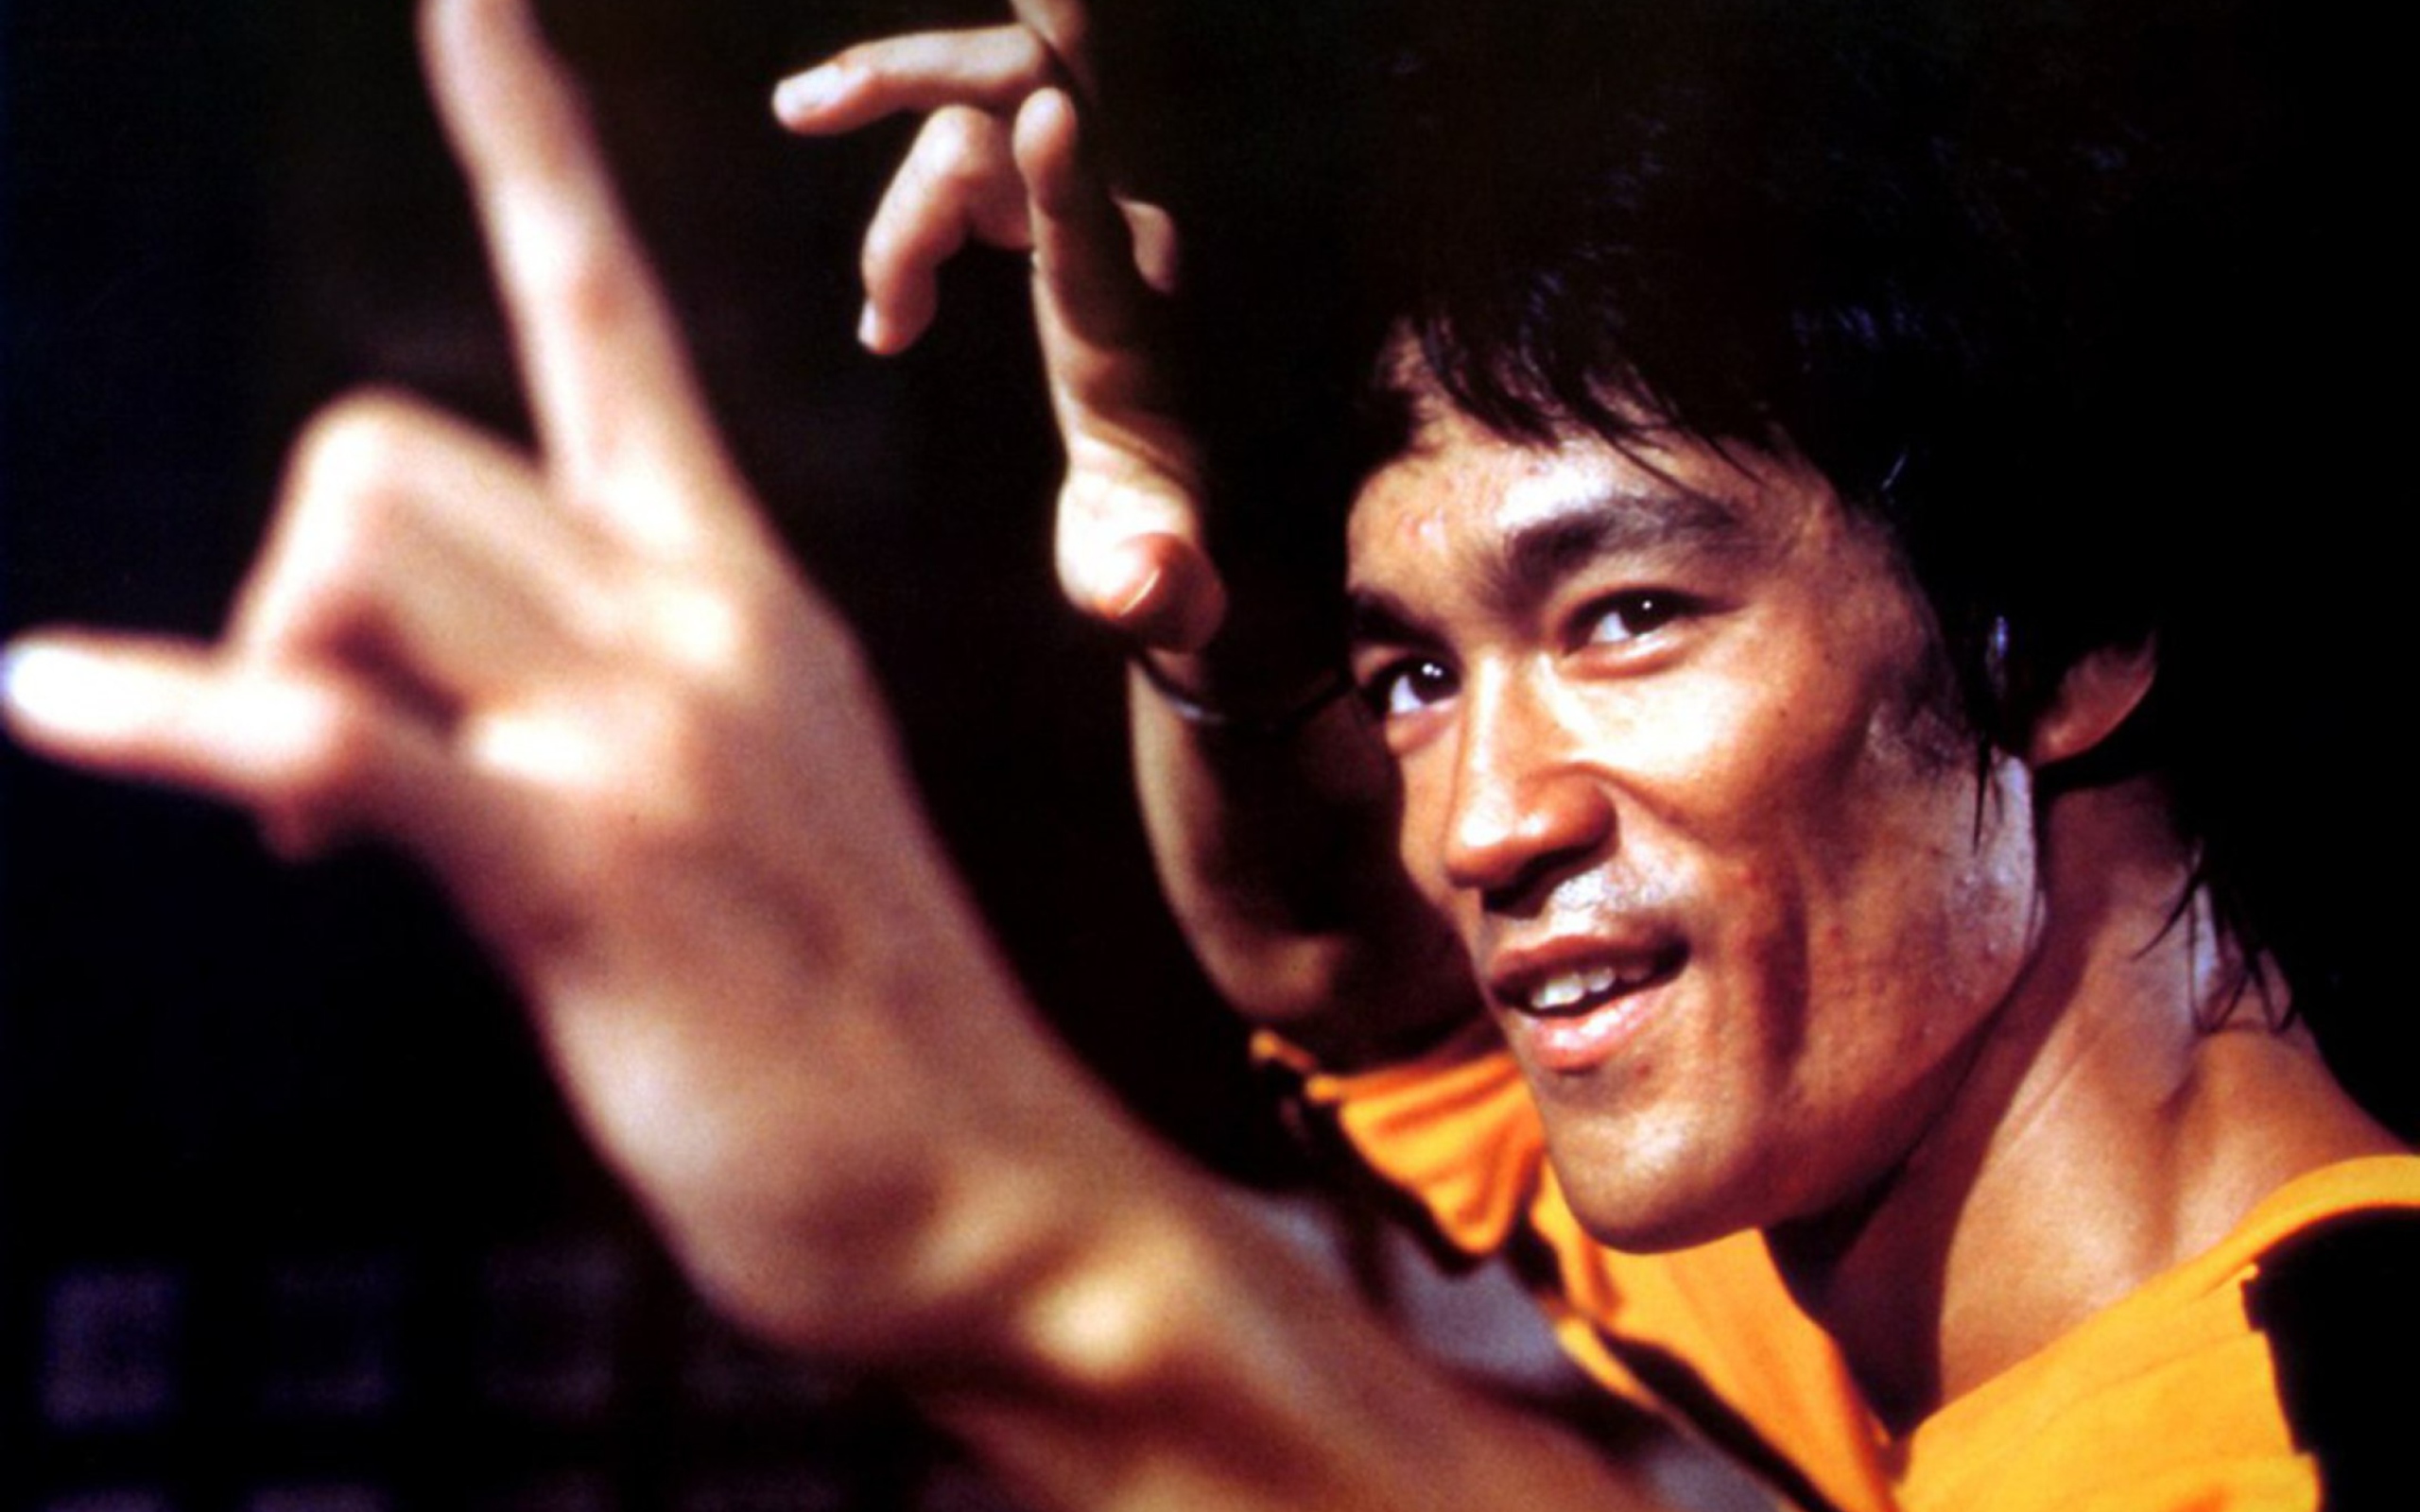 Das Bruce Lee Wallpaper 2560x1600